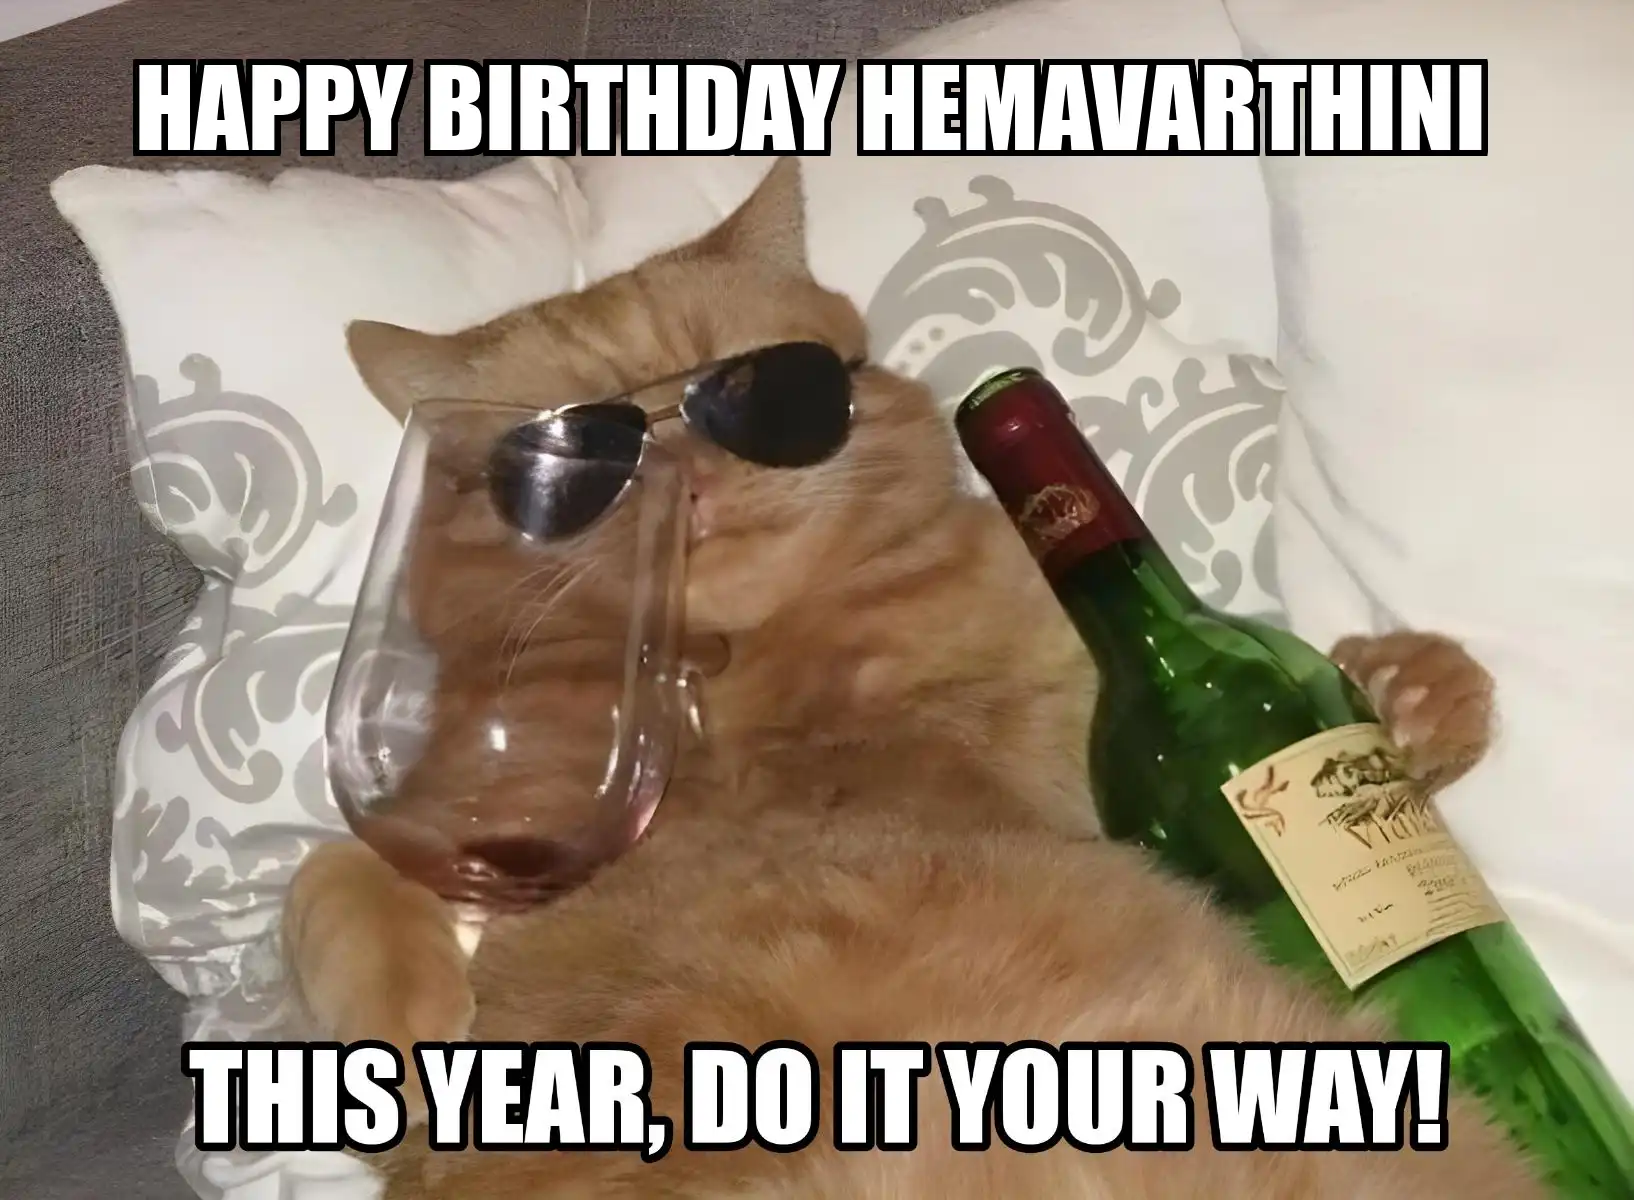 Happy Birthday Hemavarthini This Year Do It Your Way Meme